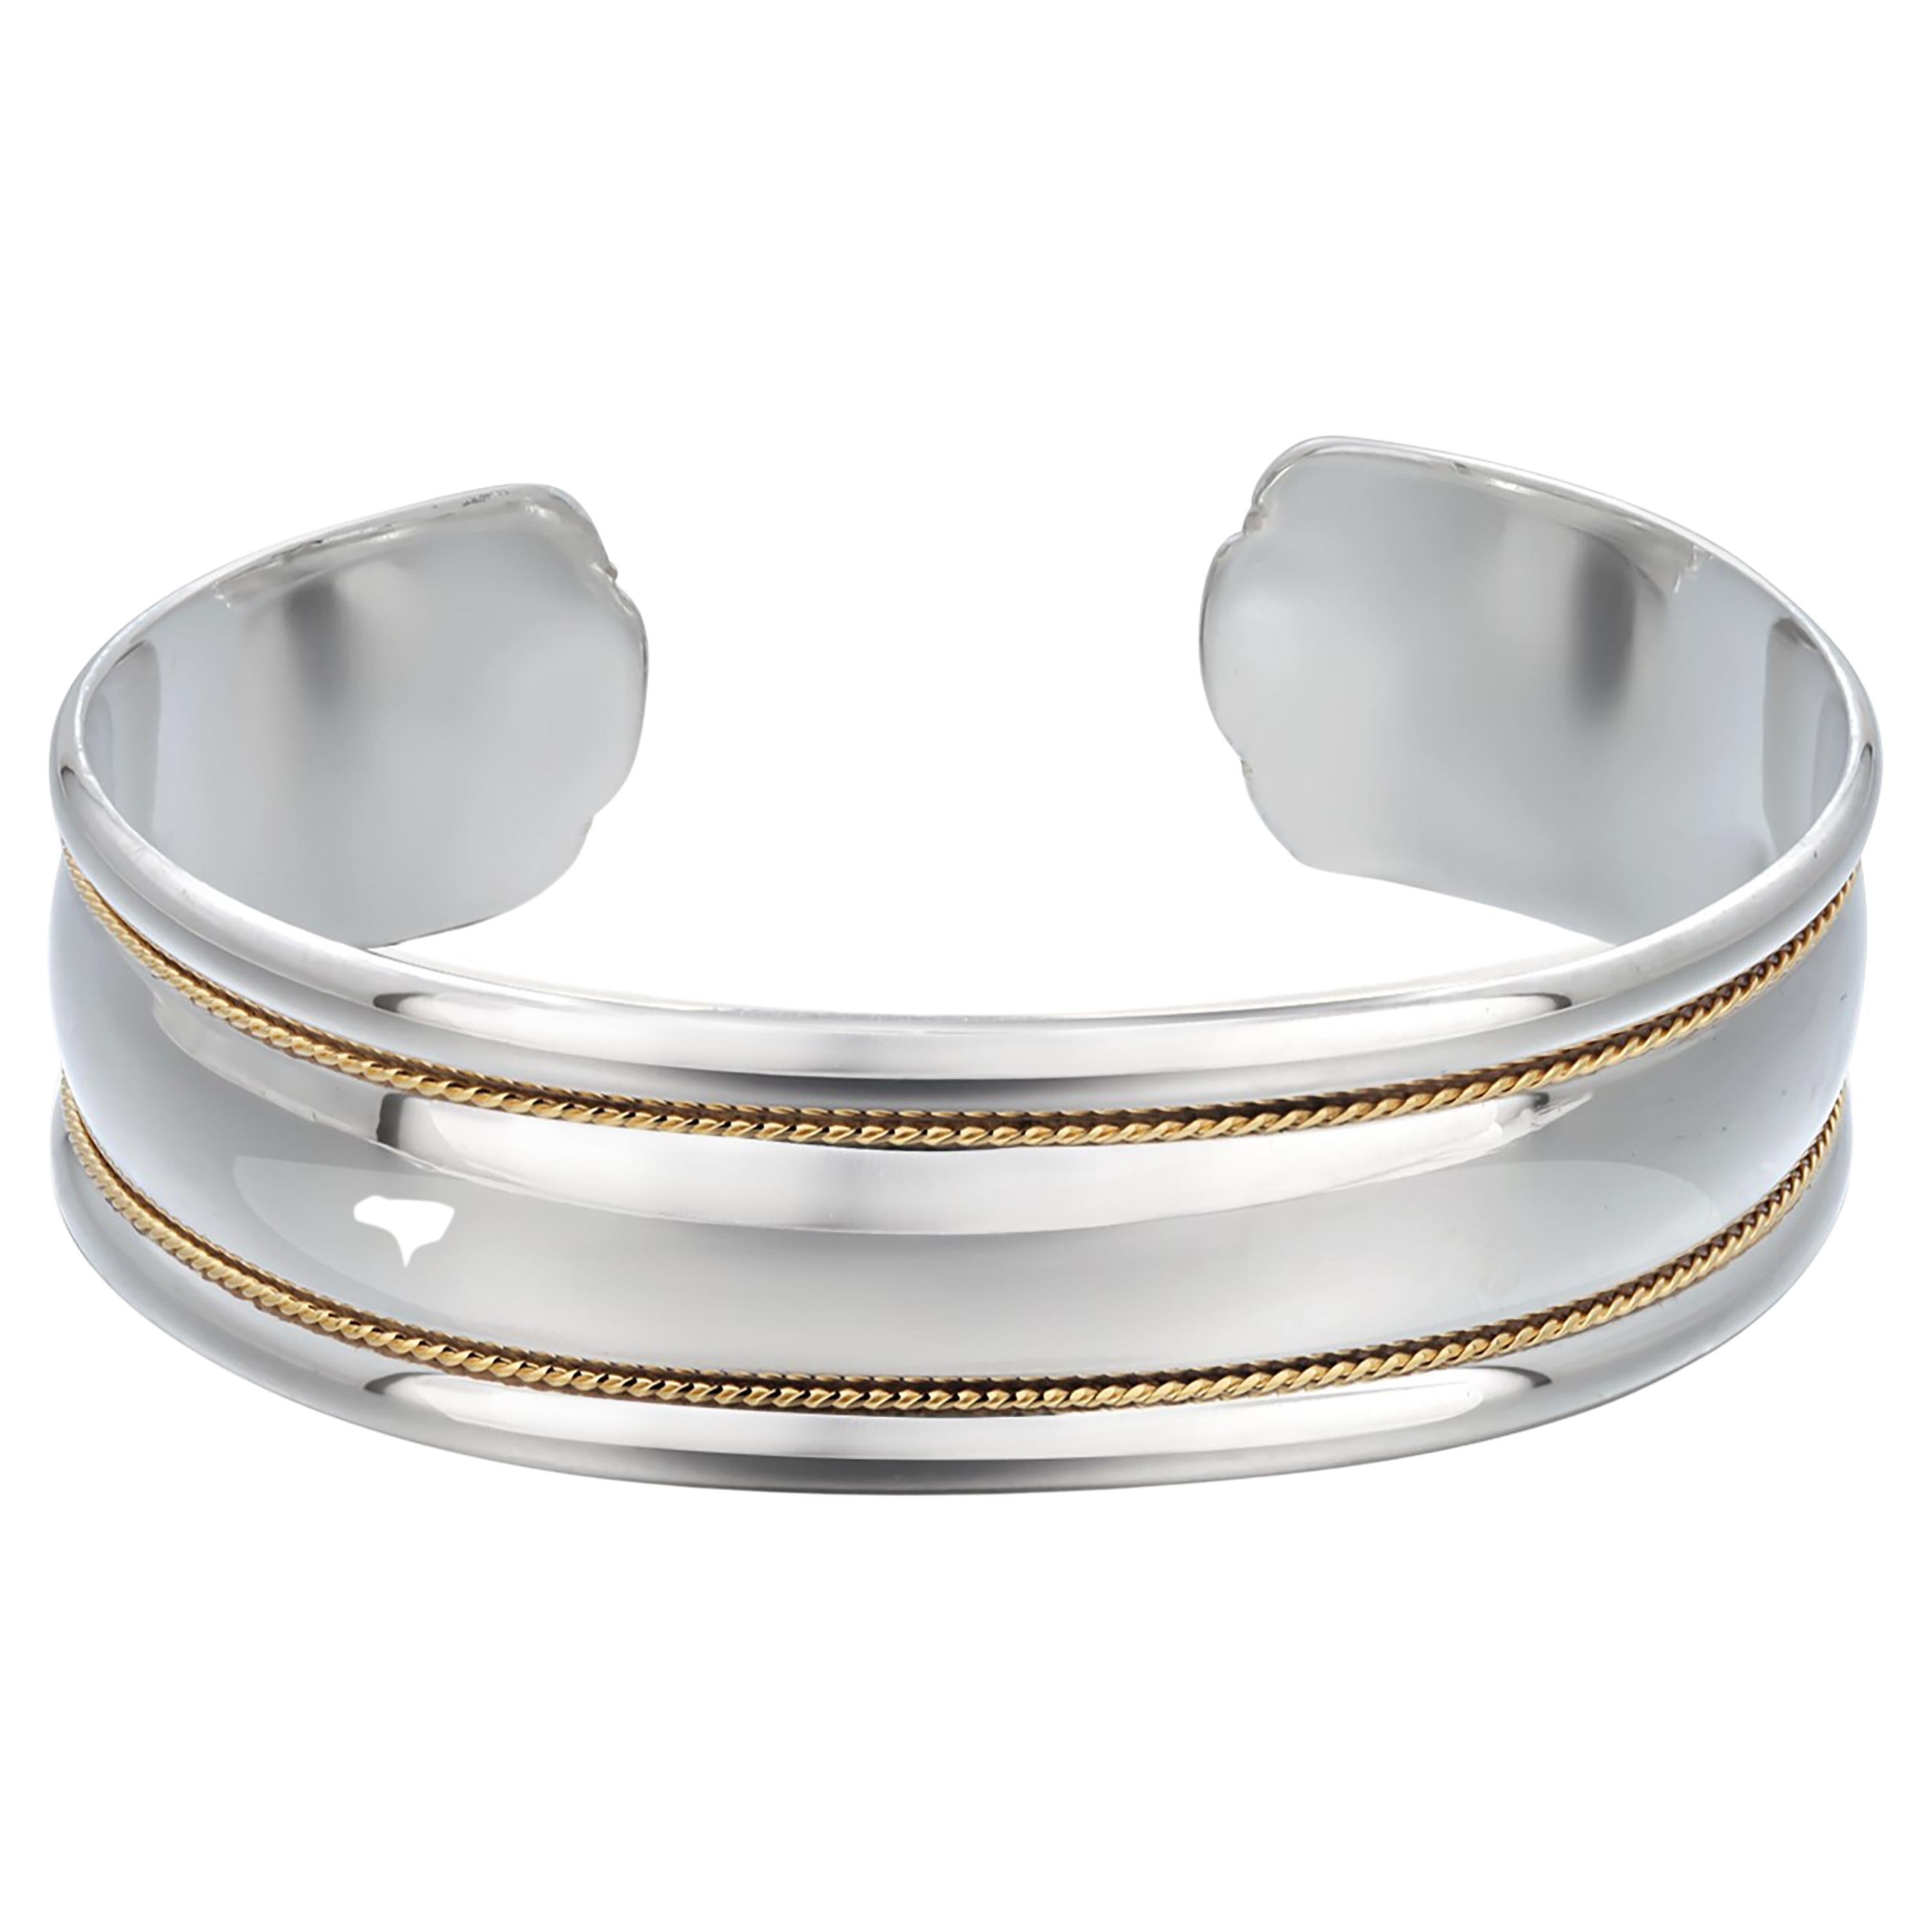 Tiffany Co 21st Century 18 Karat Gold Sterling 6.5 Inch Wide Cuff Bracelet